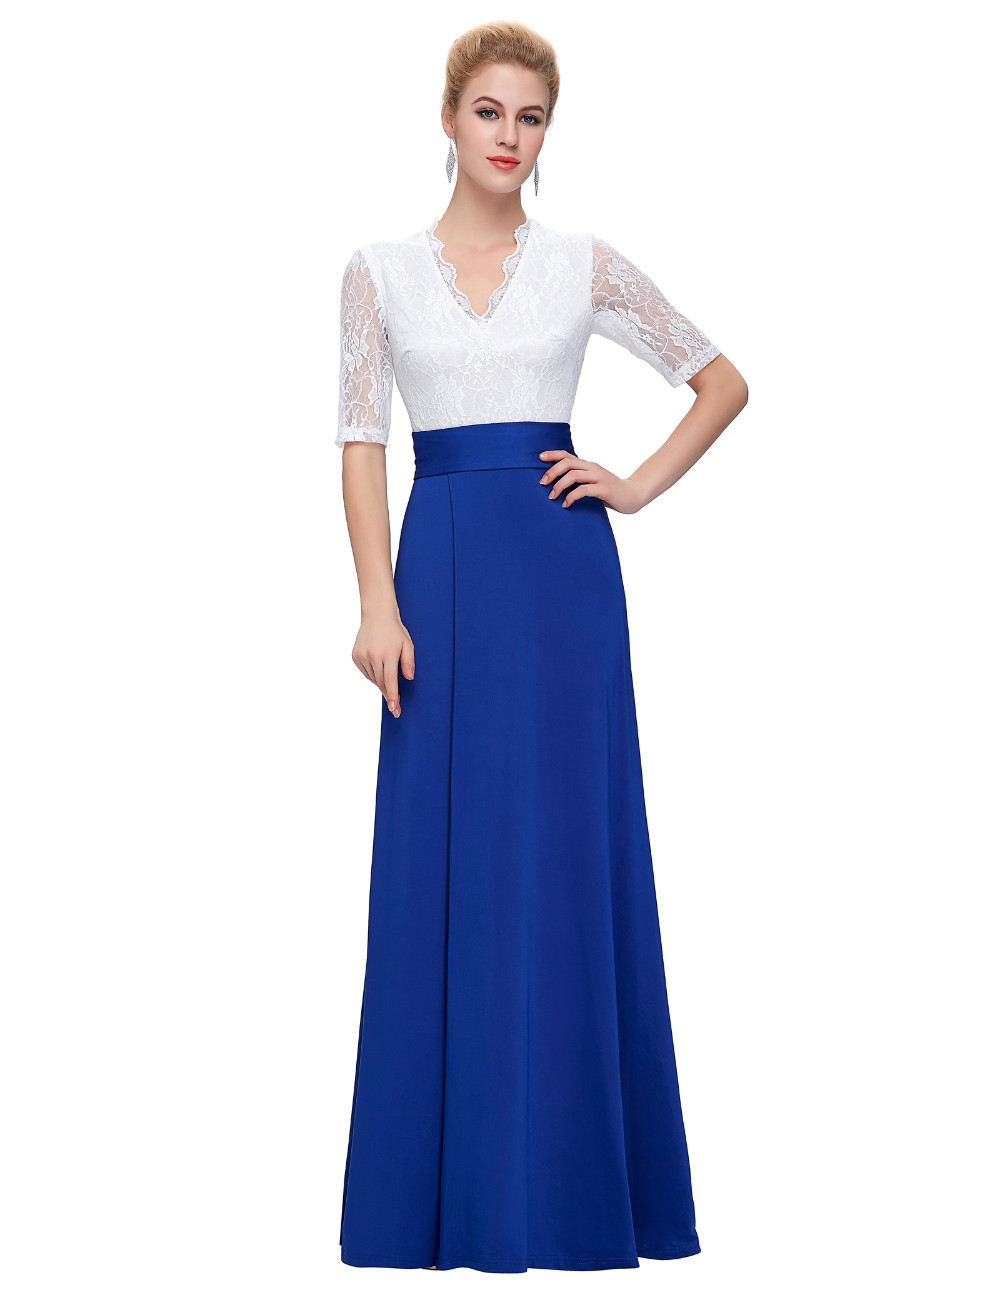 Half-Sleeve-Lace-party-dress-women-summer-style-robe-de-soiree-split-Floor-Length-Formal-Navy-Blue-s-32646277022